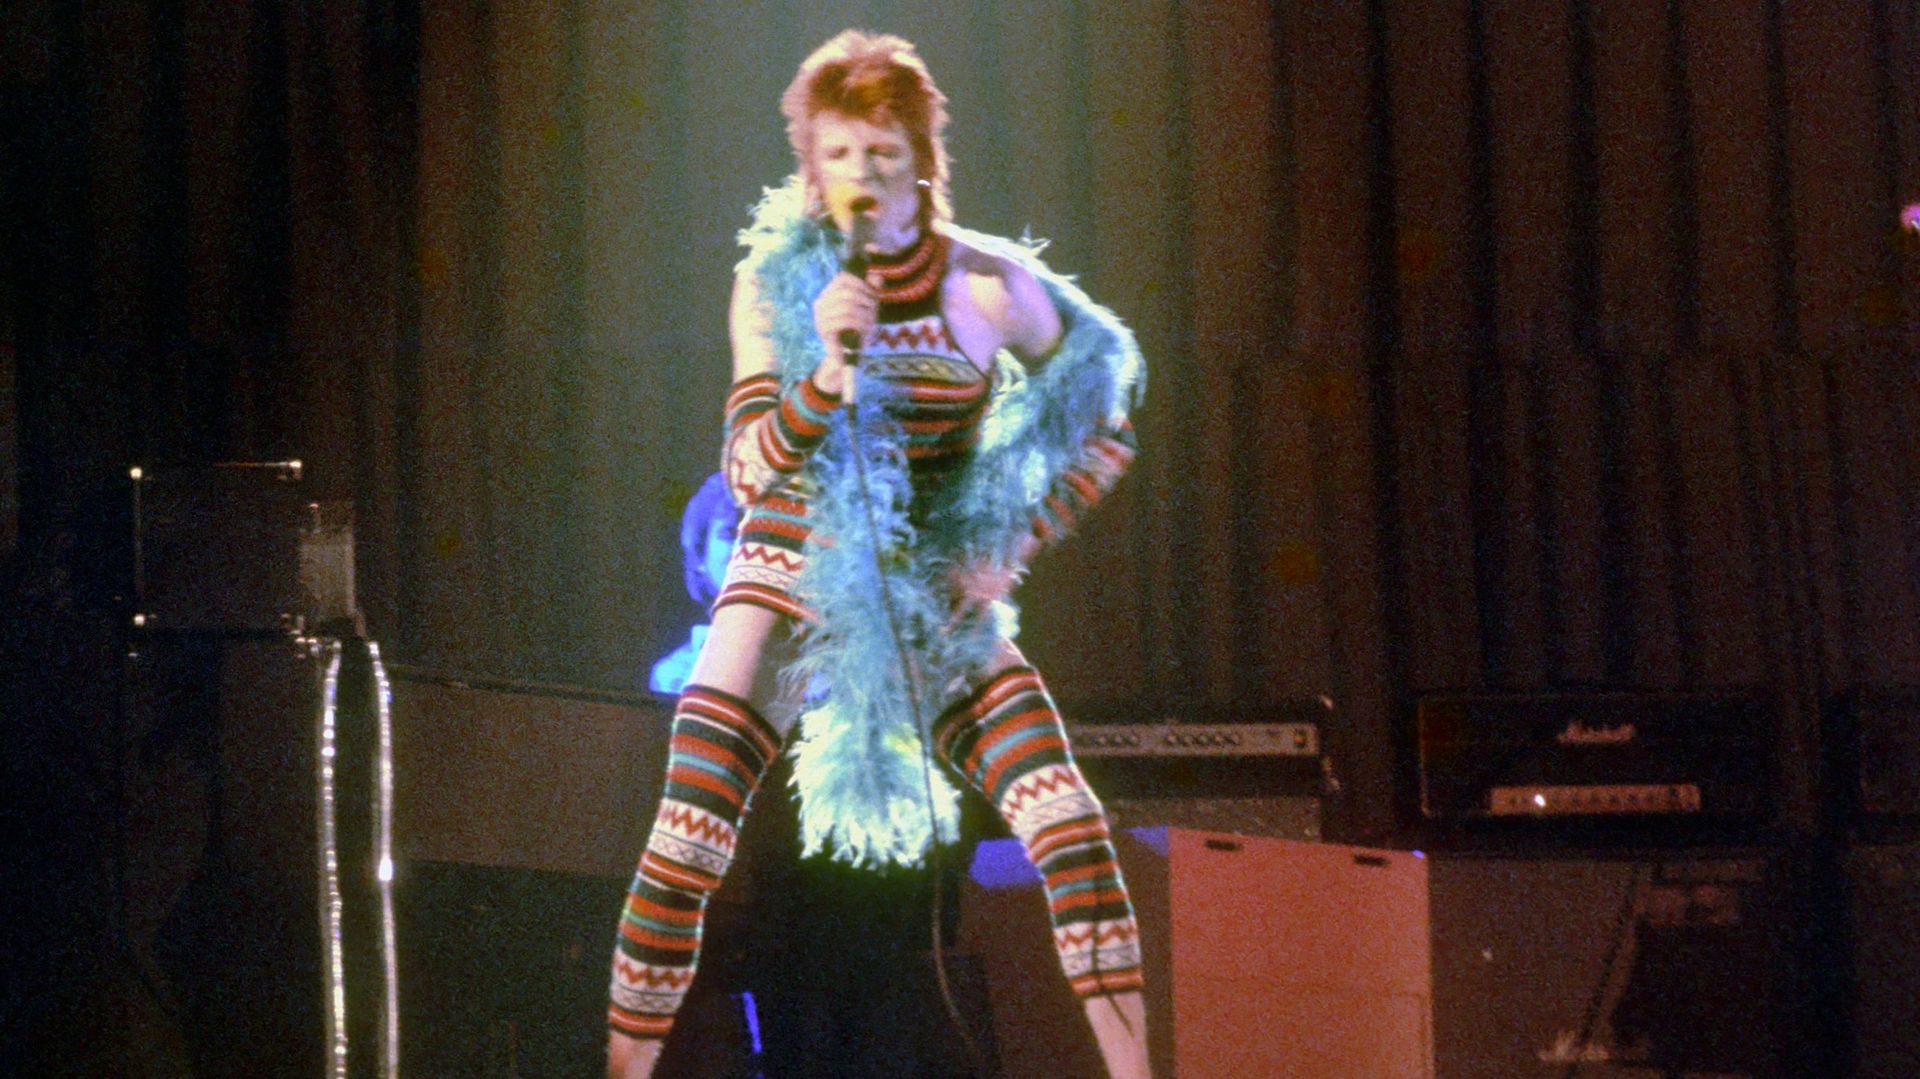 Ziggy Stardust Era Bowie In LA